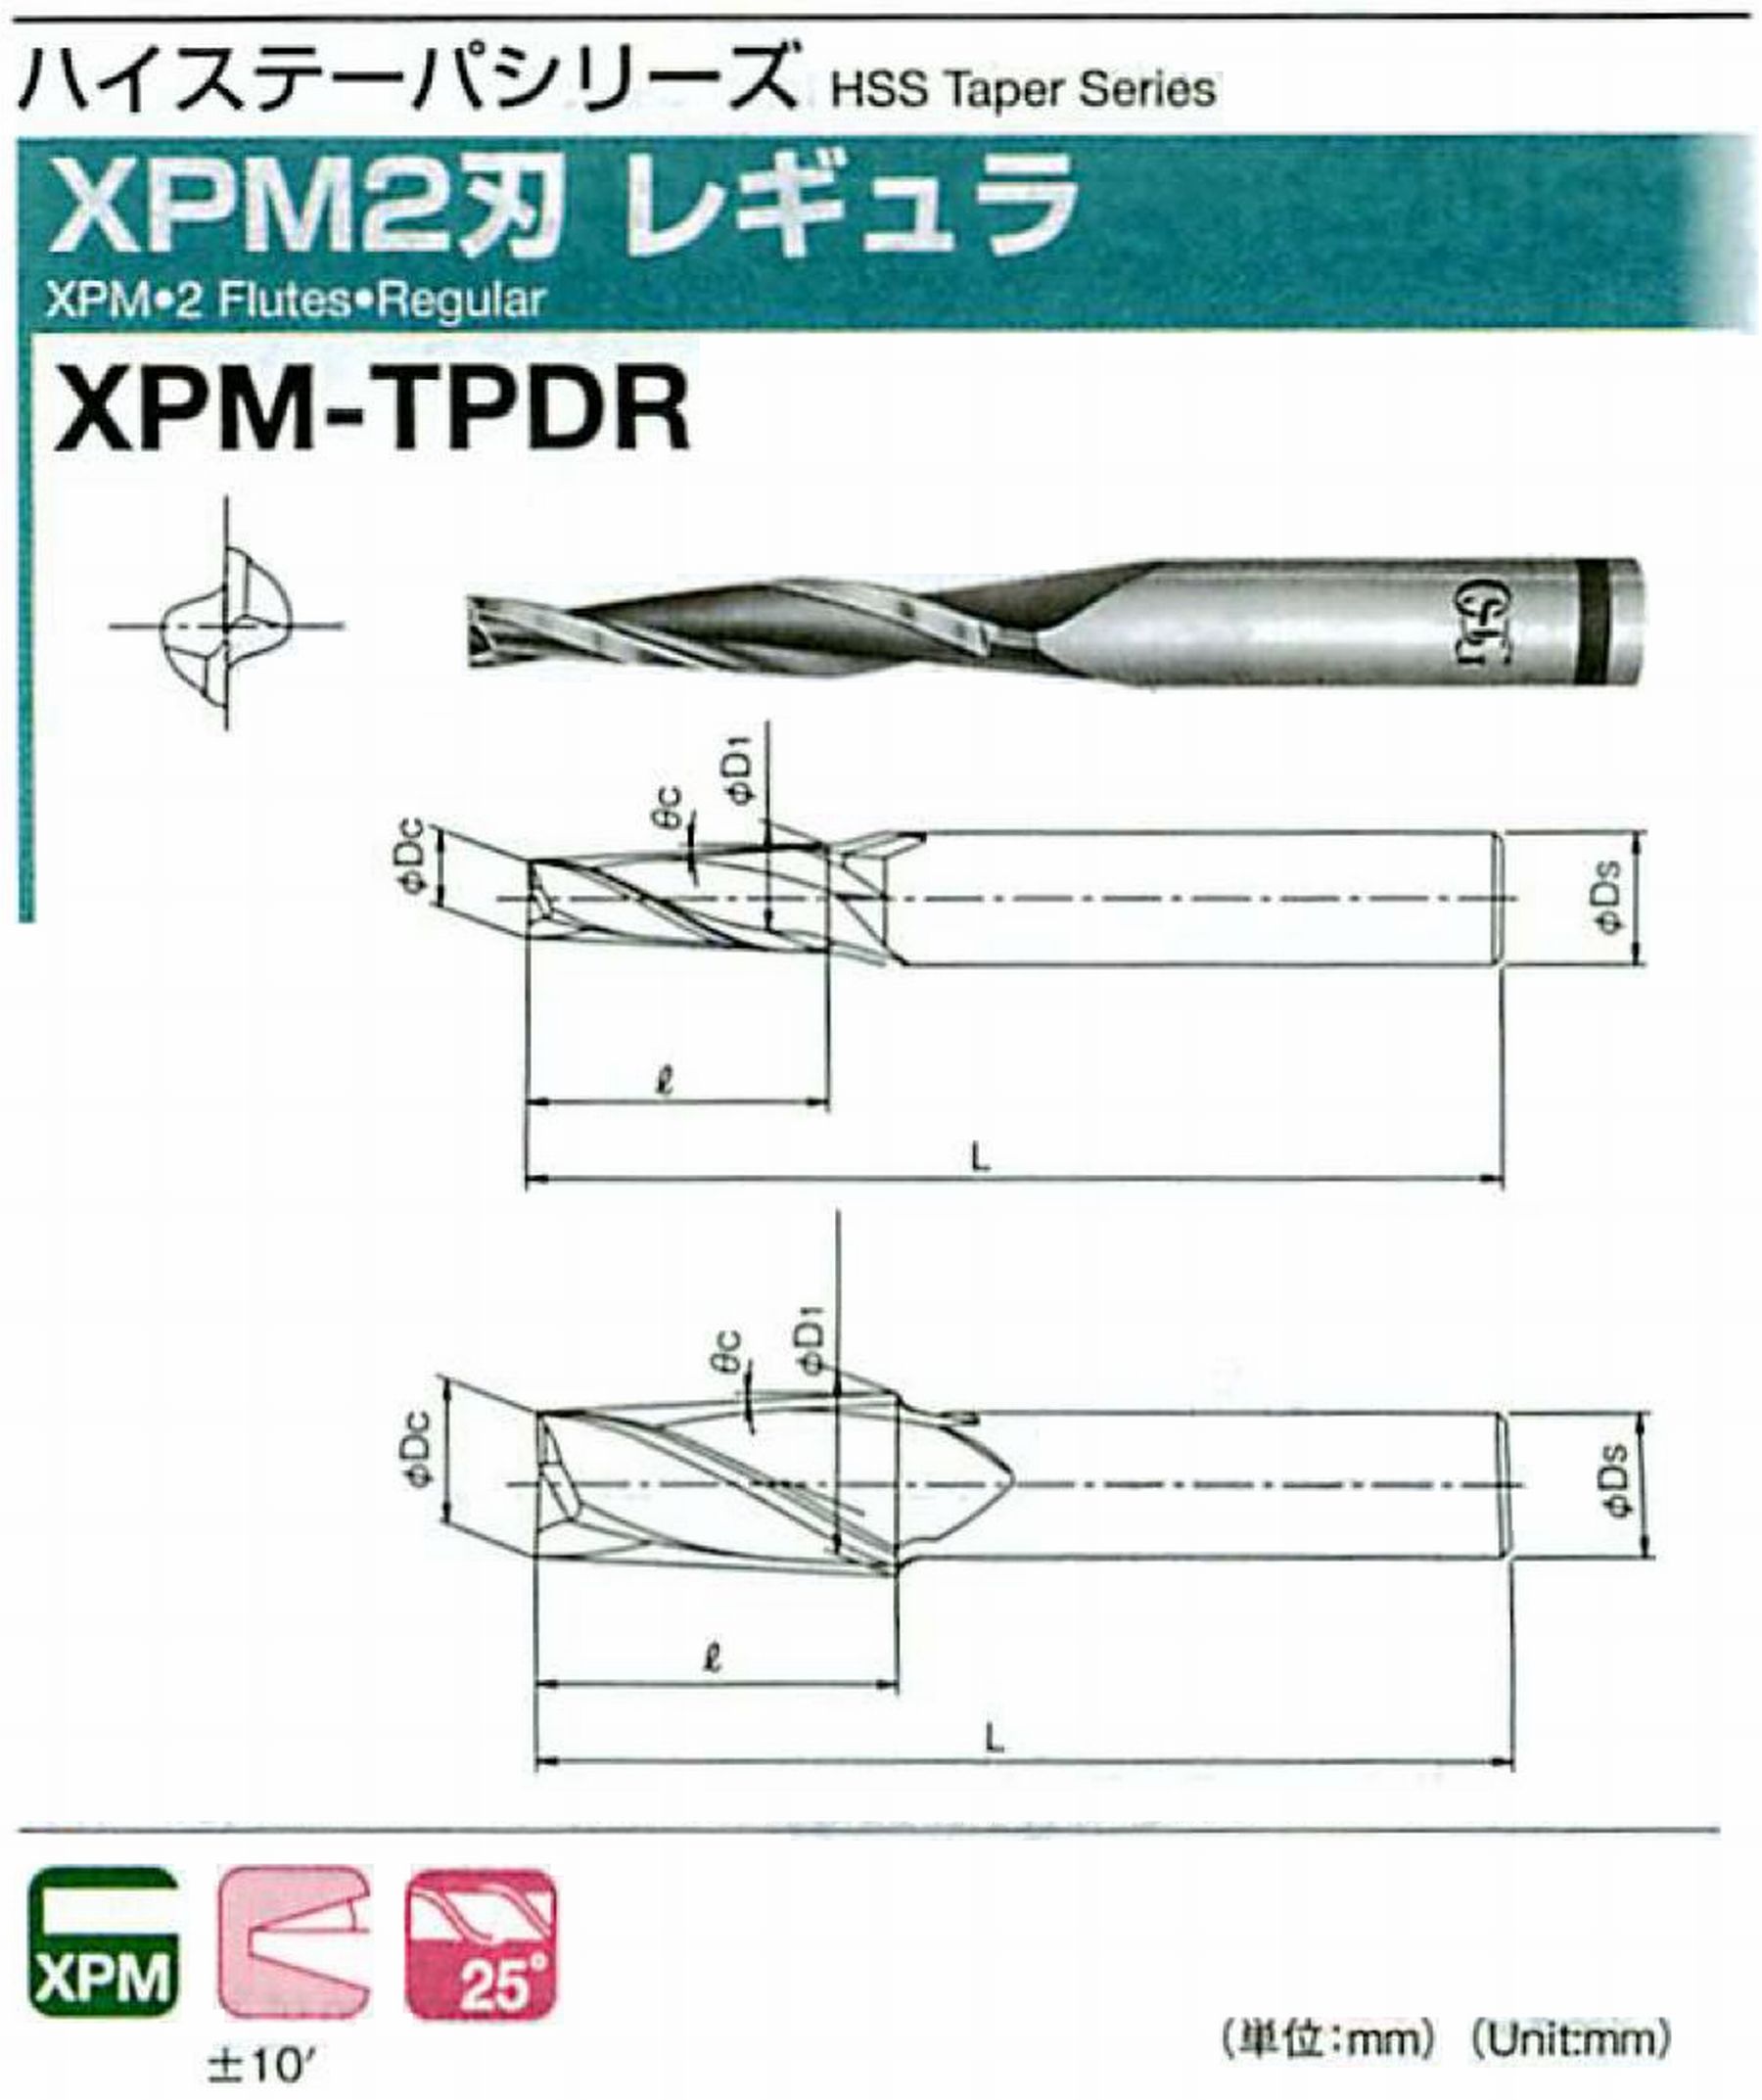 オーエスジー/OSG XPM2刃 レギュラ XPM-TPDR 外径×刃部テーパ半角5×0.5° 全長68 刃長24 シャンク径6mm 大端径5.42